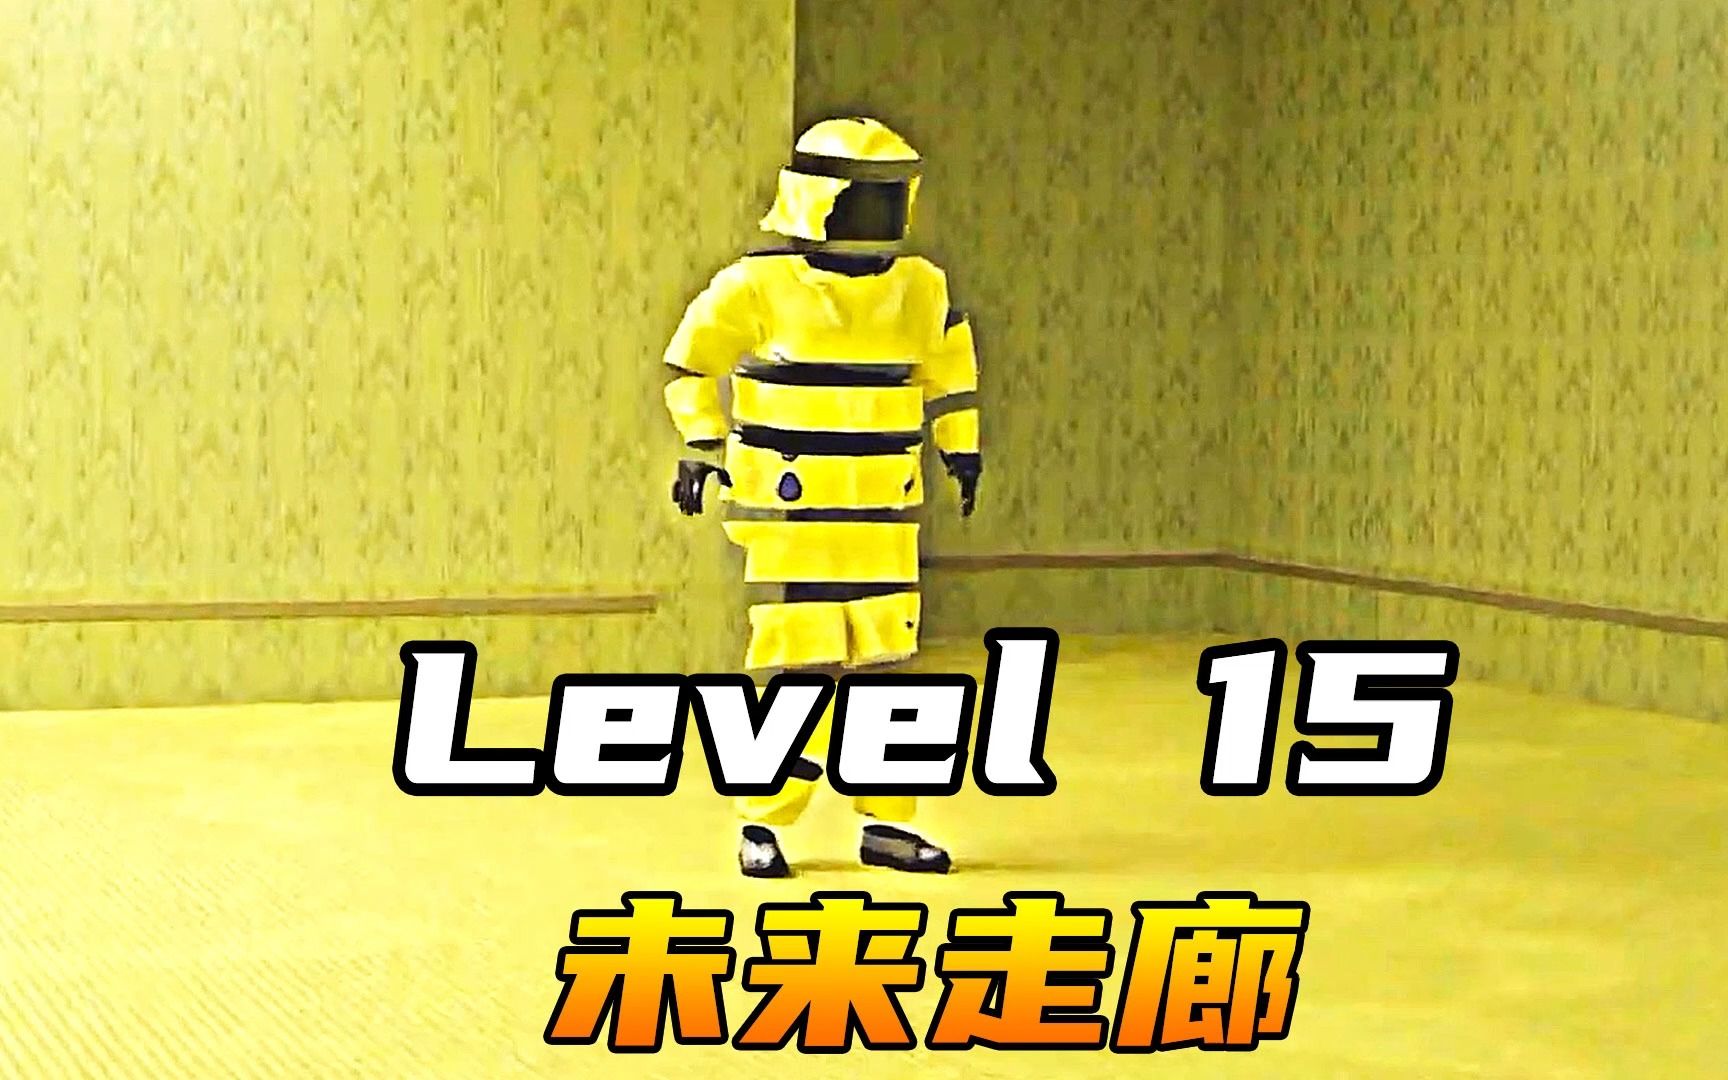 Level 15 未来走廊